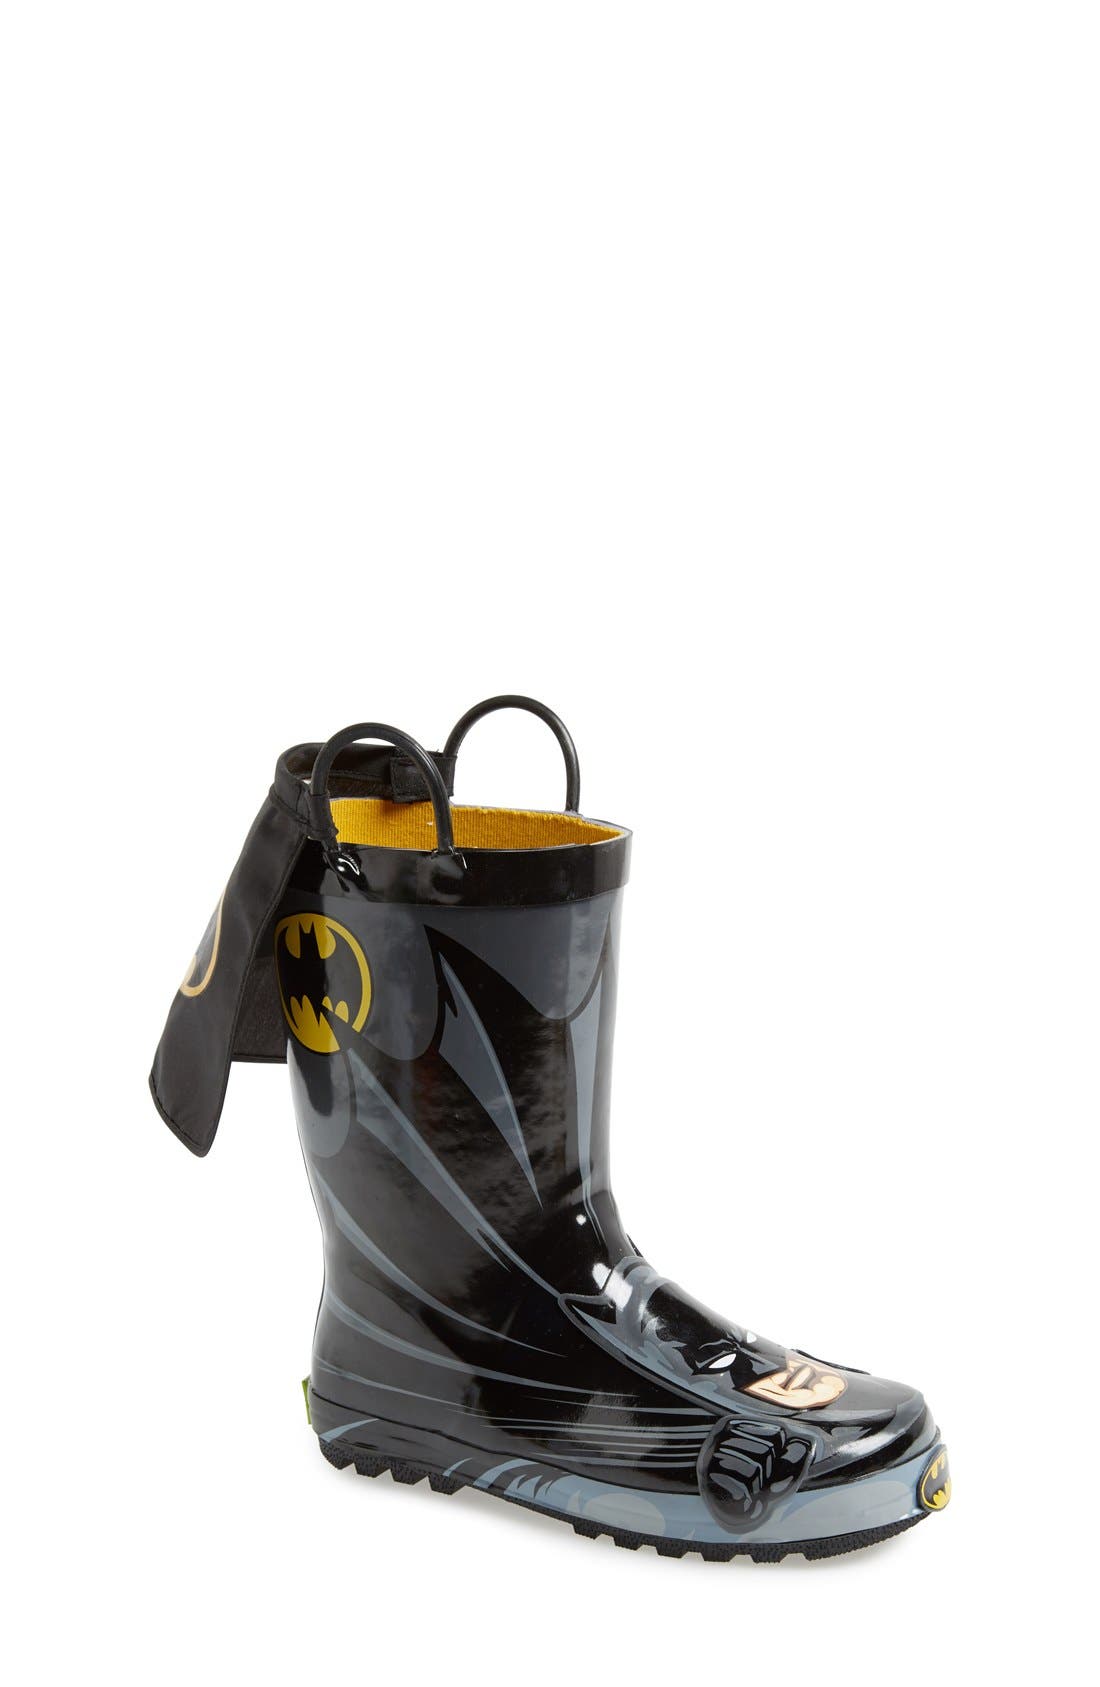 batman rain boots